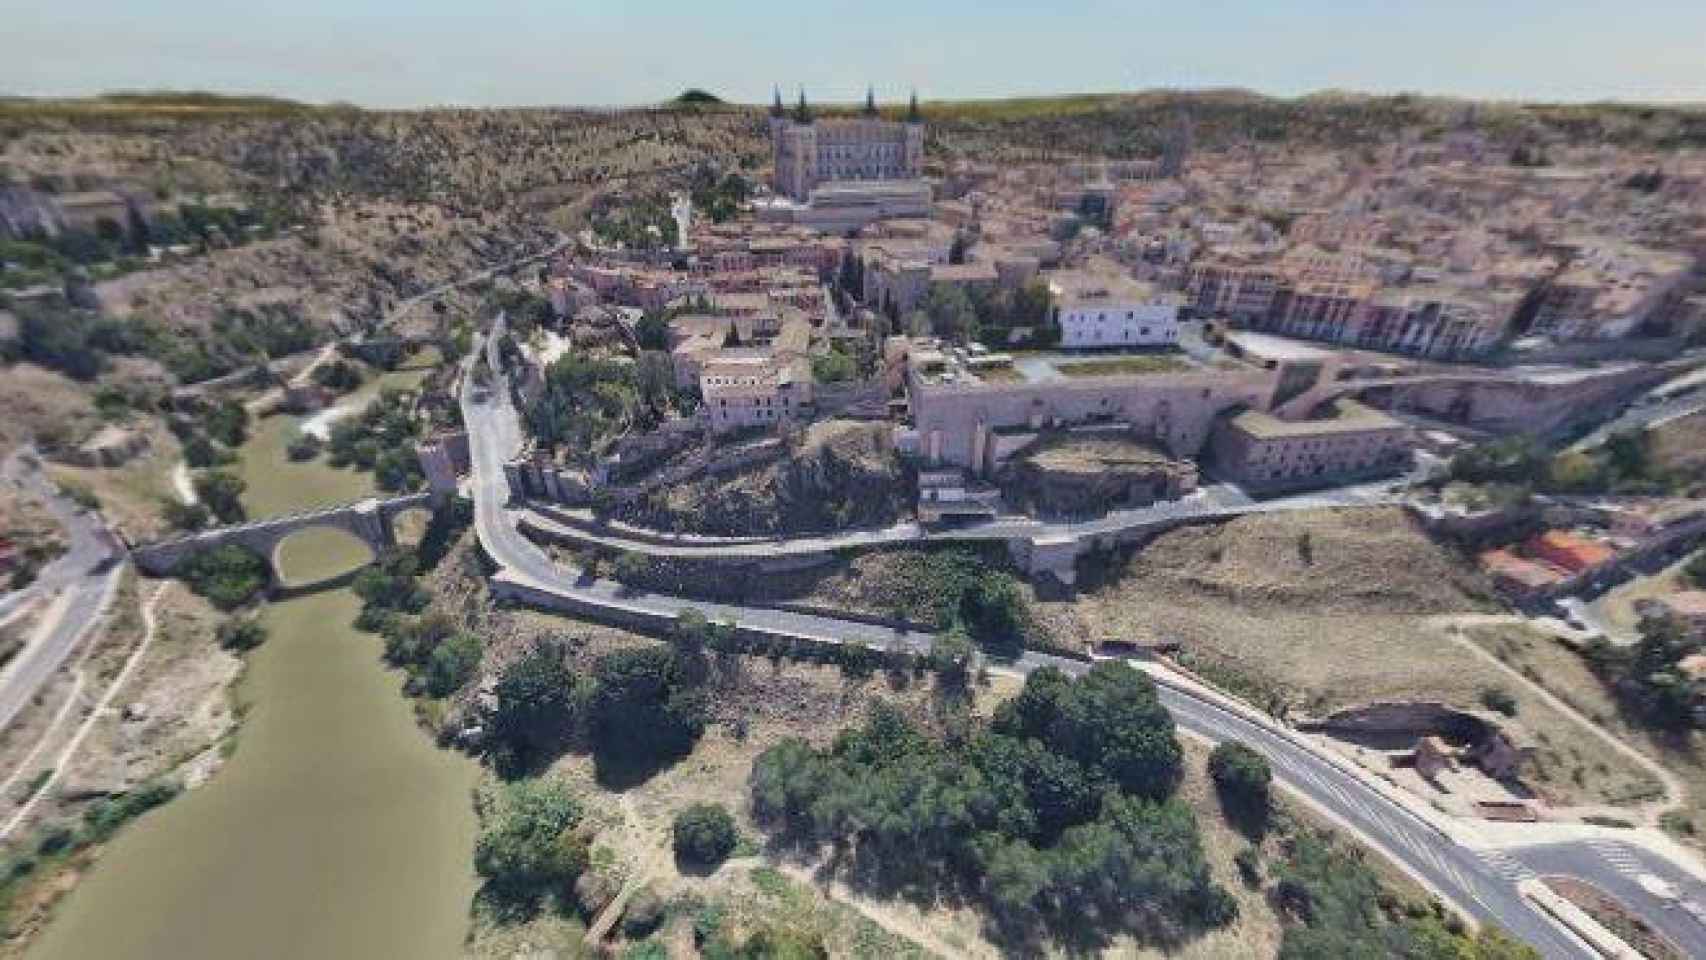 El Toledo de José María Díez Moreno en tiempos del Covid-19 (Foto: Captura de la imagen de 360 grados publicada en Facebook)